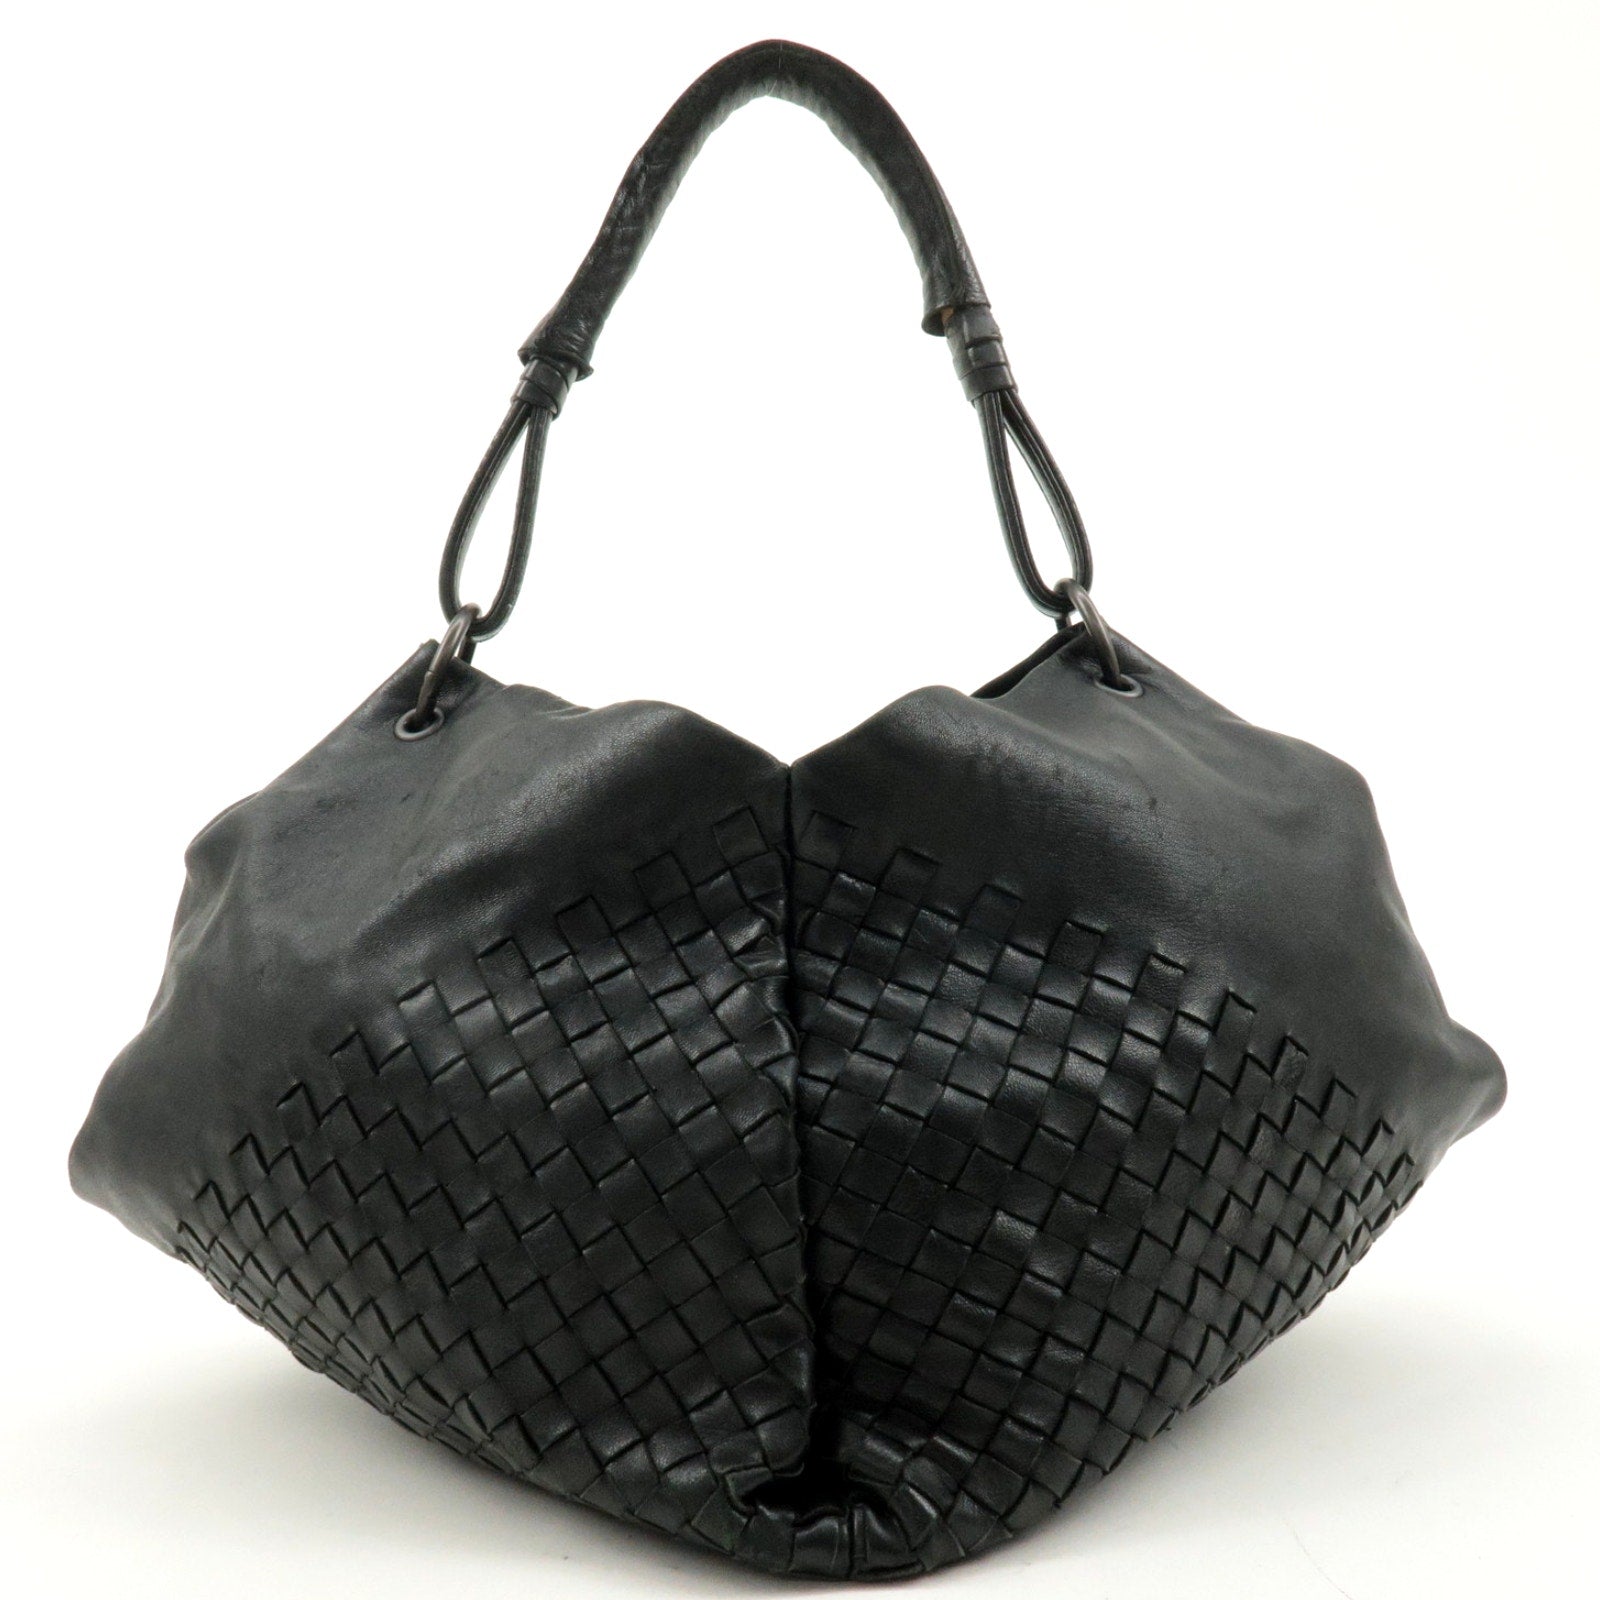 Authentic BOTTEGA VENETA Intrecciato Leather One-Shoulder Bag Black